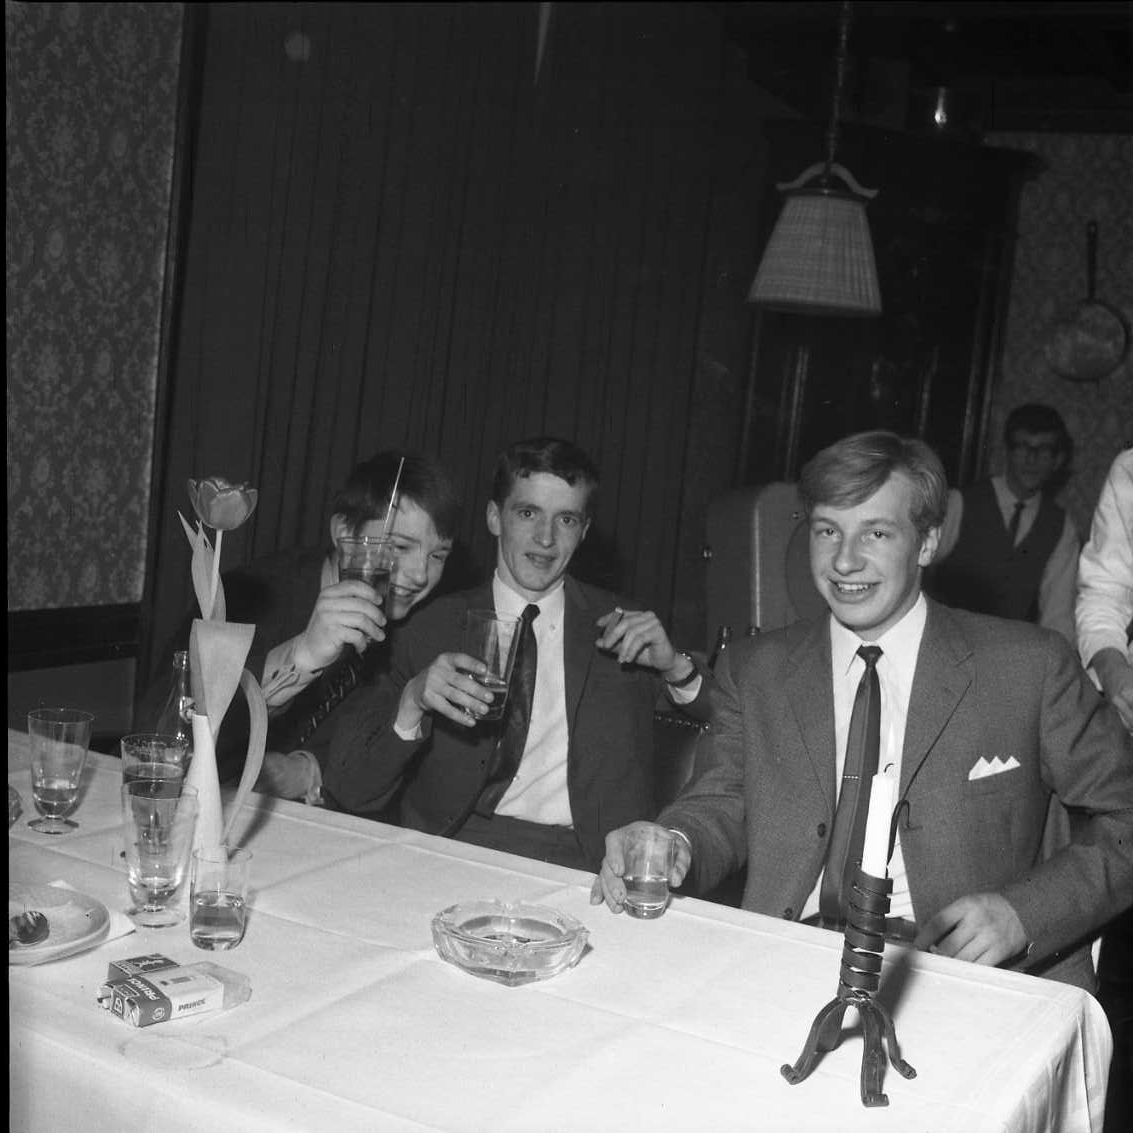 Tre unga och glada män i kostym och slips sitter vid ett bord med glas i händerna. Mannen till vänster lyfter sitt glas som en skål-gest mot fotografen. På bordet står det flera tomma glas, askkopp, cigaretter och några använda assietter. Fotografi i samband med årsmöte för Gränna AIS.